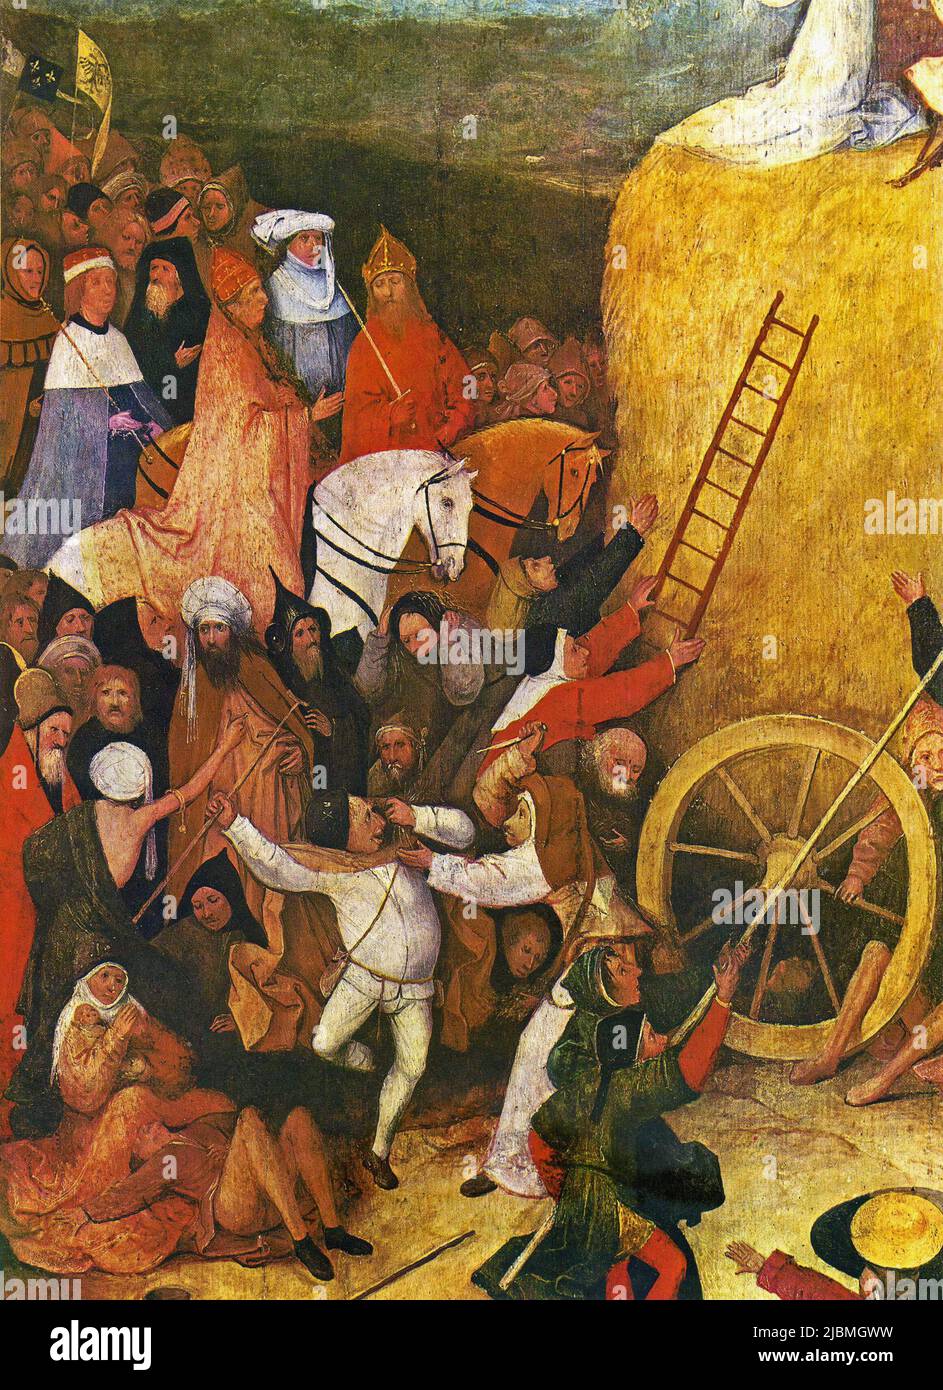 'El Haywain'. Detalle del panel central del tríptico. Pintura de Hieronymus Bosch. Madrid, Prado. Foto de stock